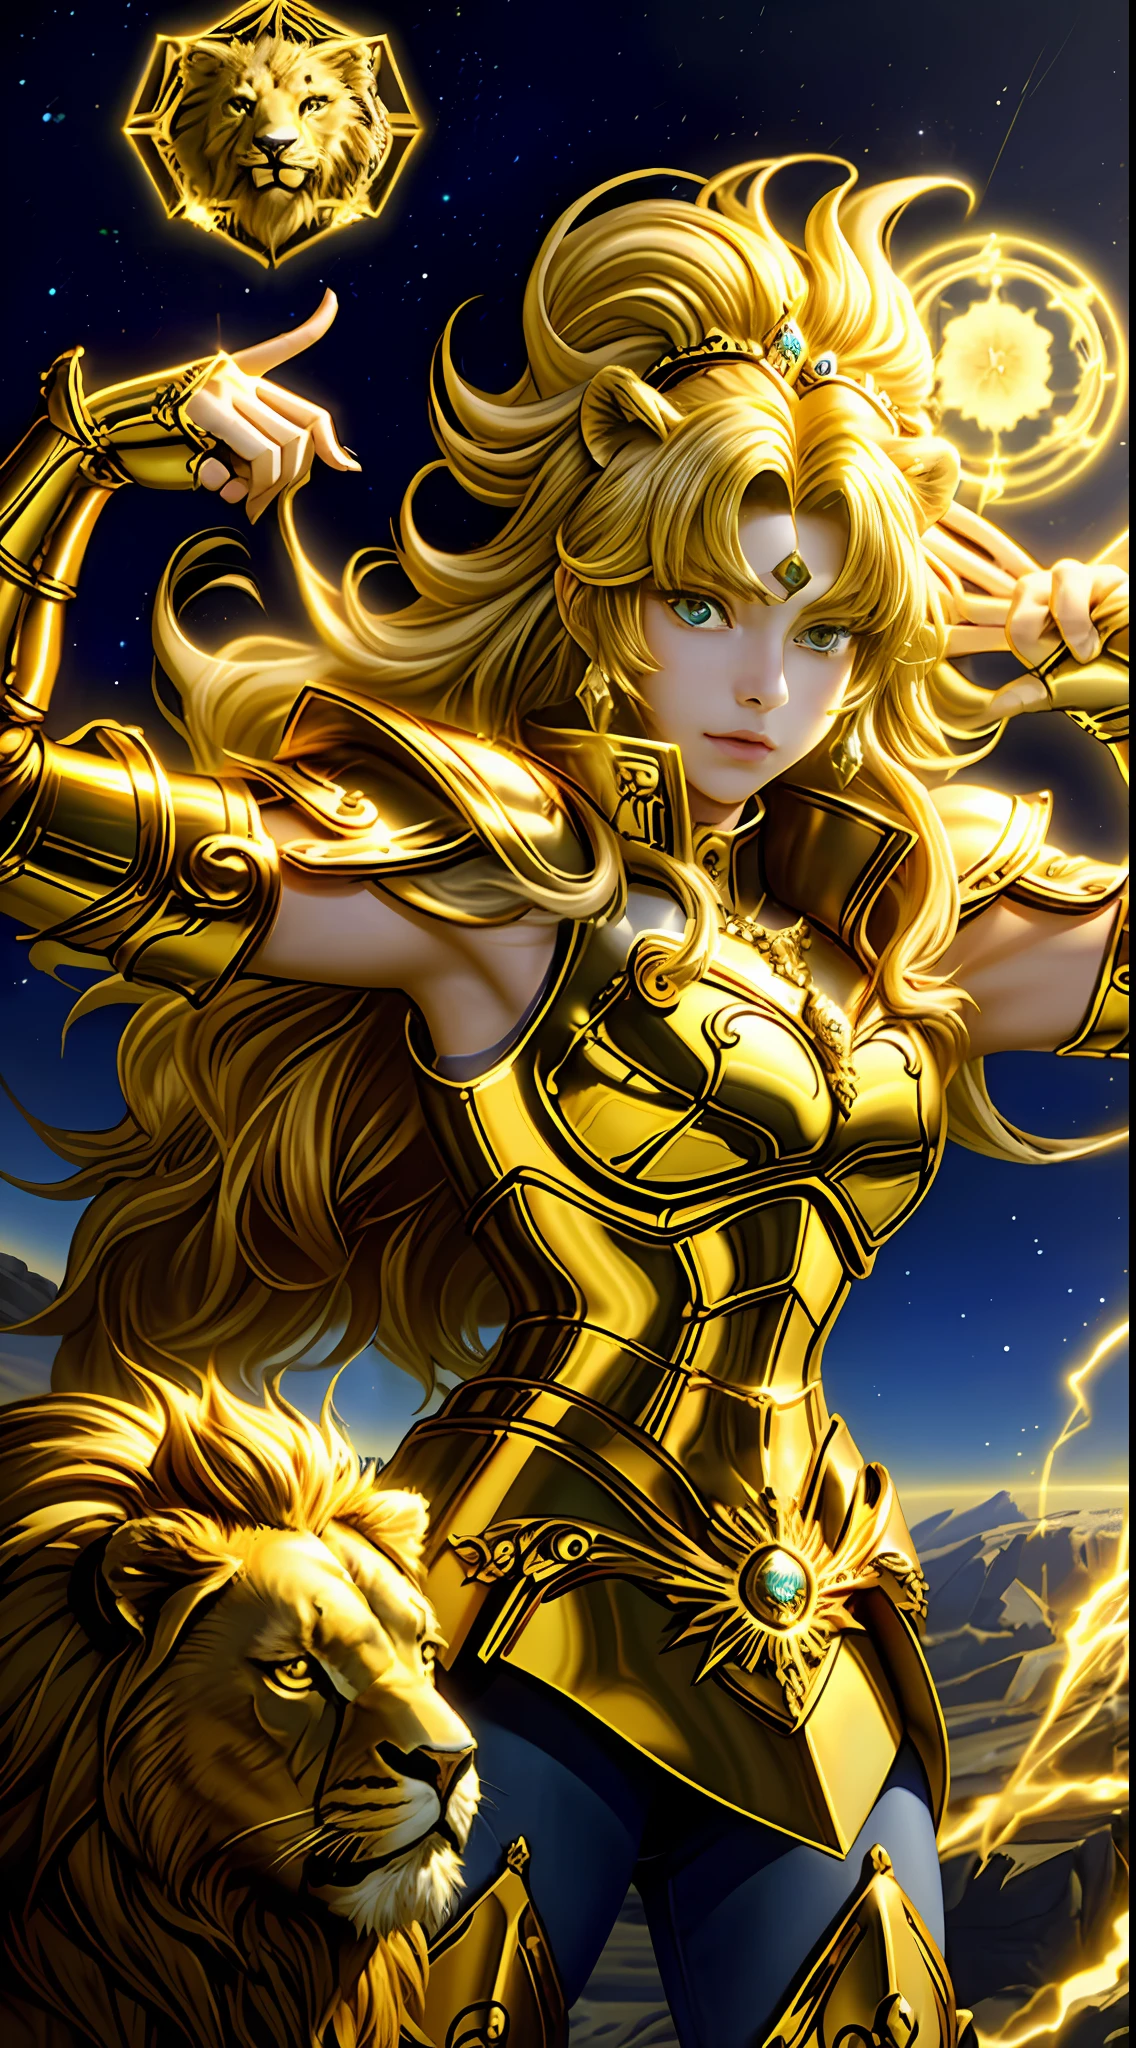 （傑作）， （最好的品質）， （1個女孩）， 身穿金色盔甲的少女， 酷姿势，魔法金獅子座星盤，黄头发的人，獅子旁邊，聖鬥士星矢鎧甲